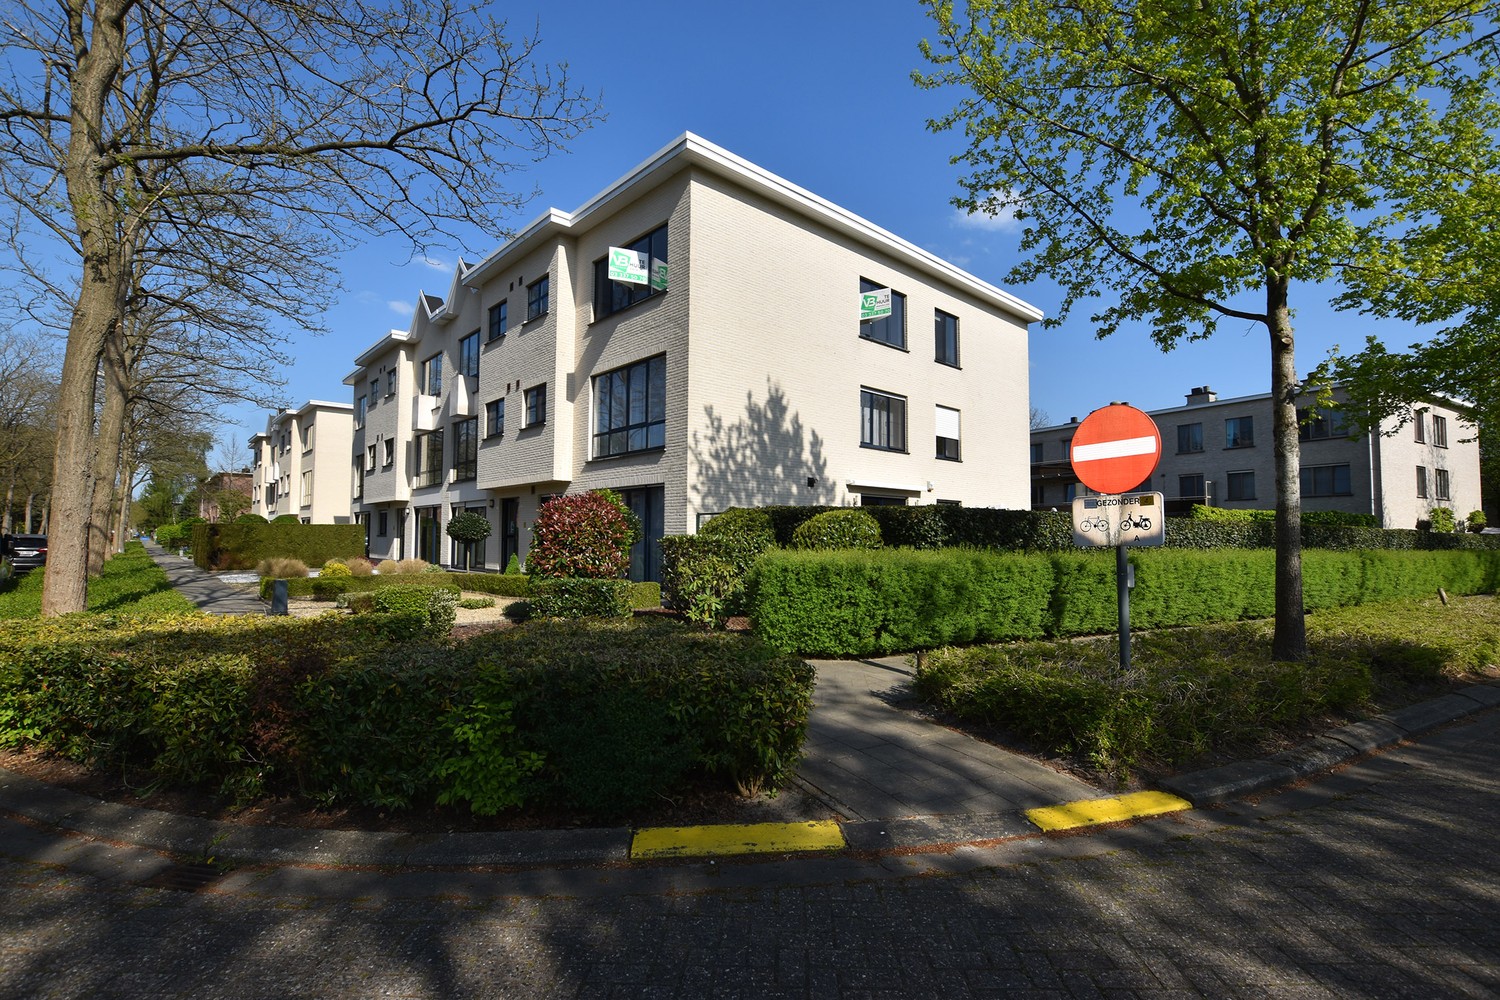 Lichtrijk hoekappartement met 3 slaapkamers & garagebox te Brasschaat! afbeelding 1